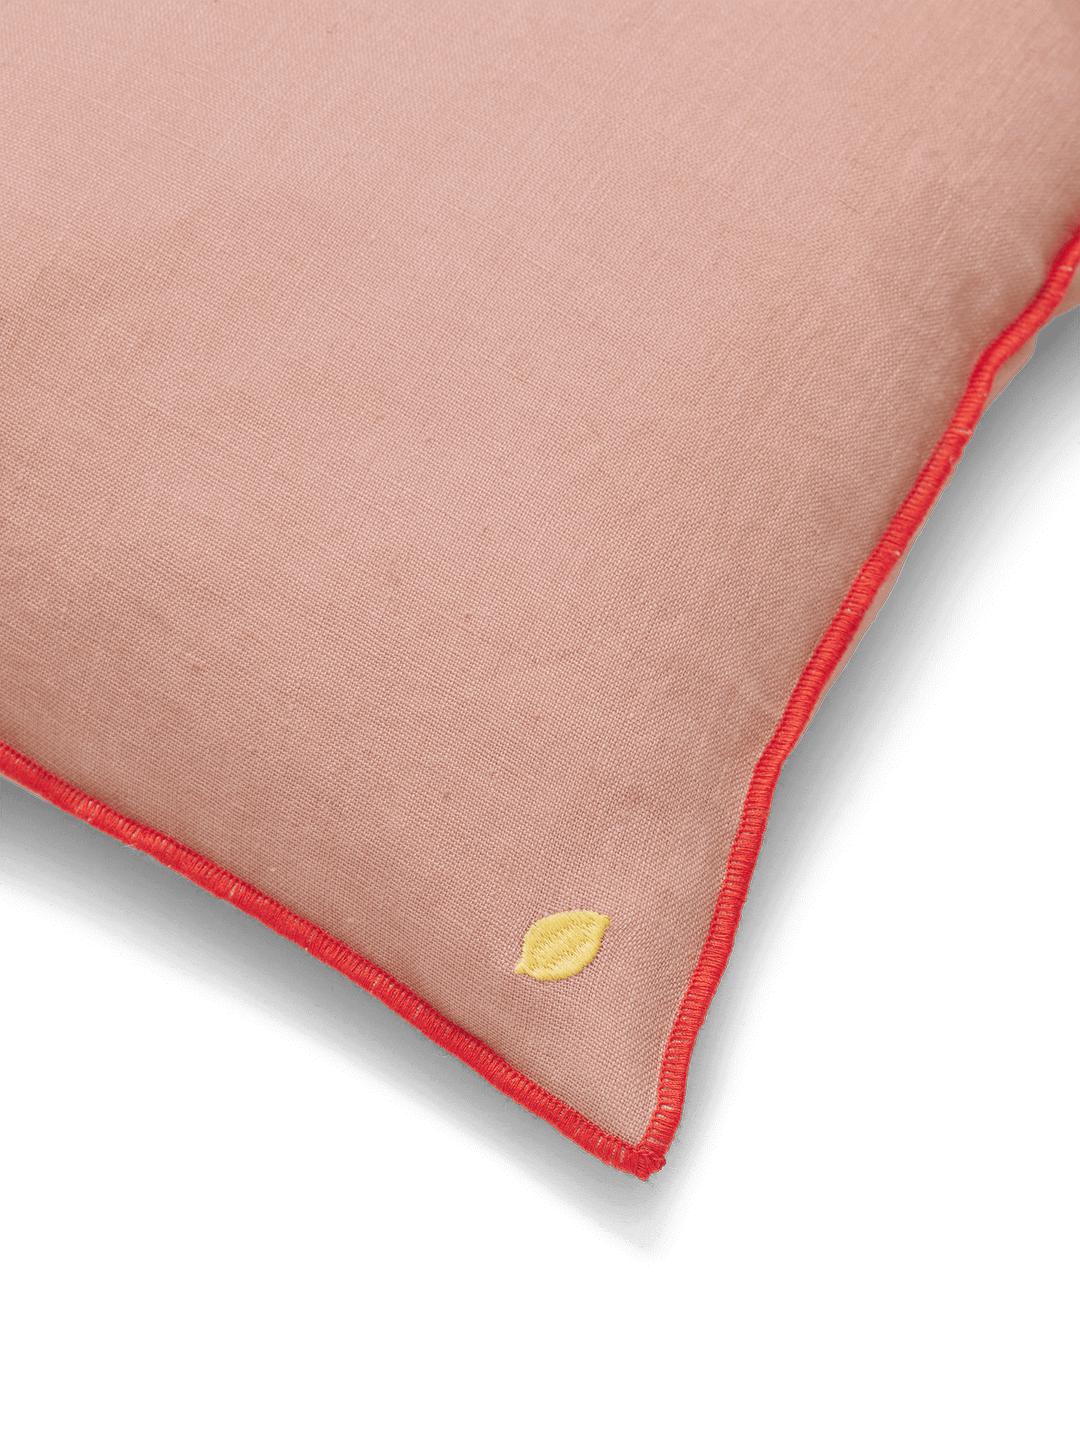 Cuscino di lino a contrasto vivente ferm, rosa polverosa